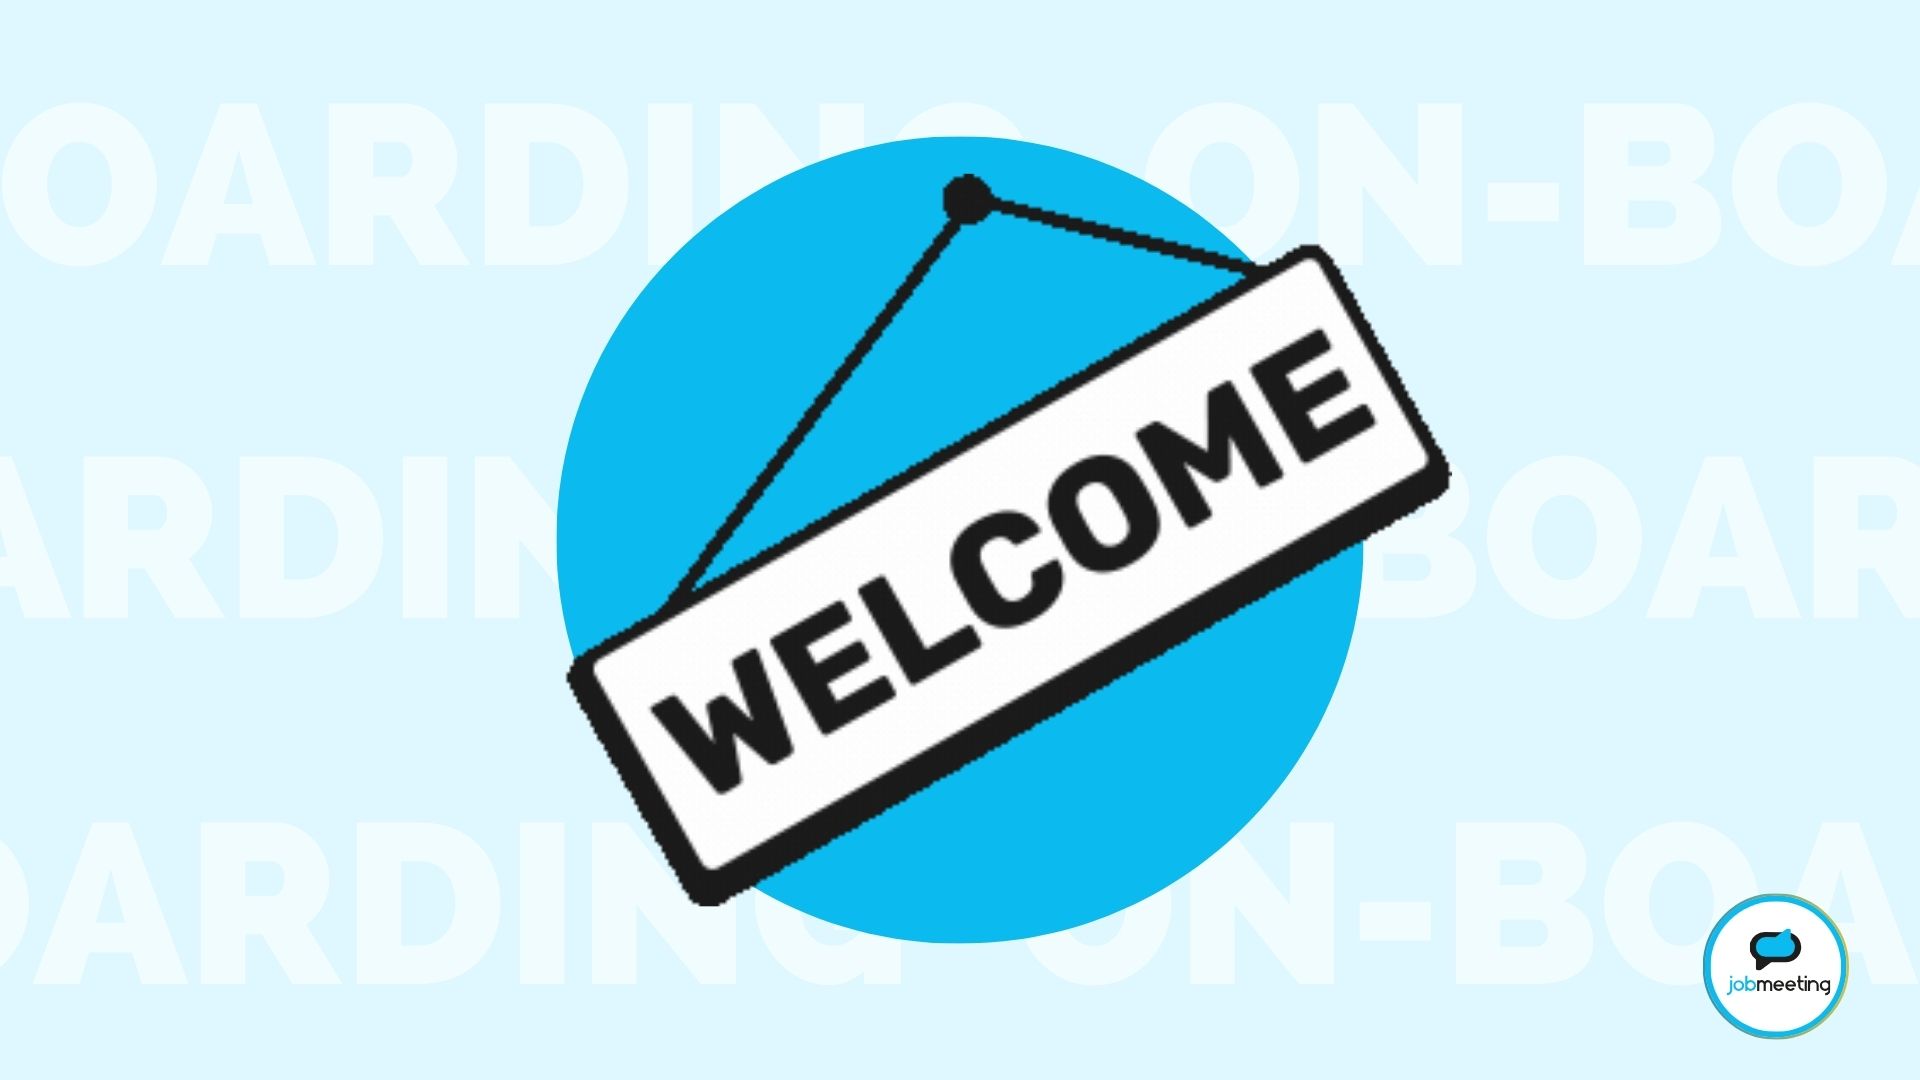 icona di un cartello con scritto "welcome" su sfondo azzurro